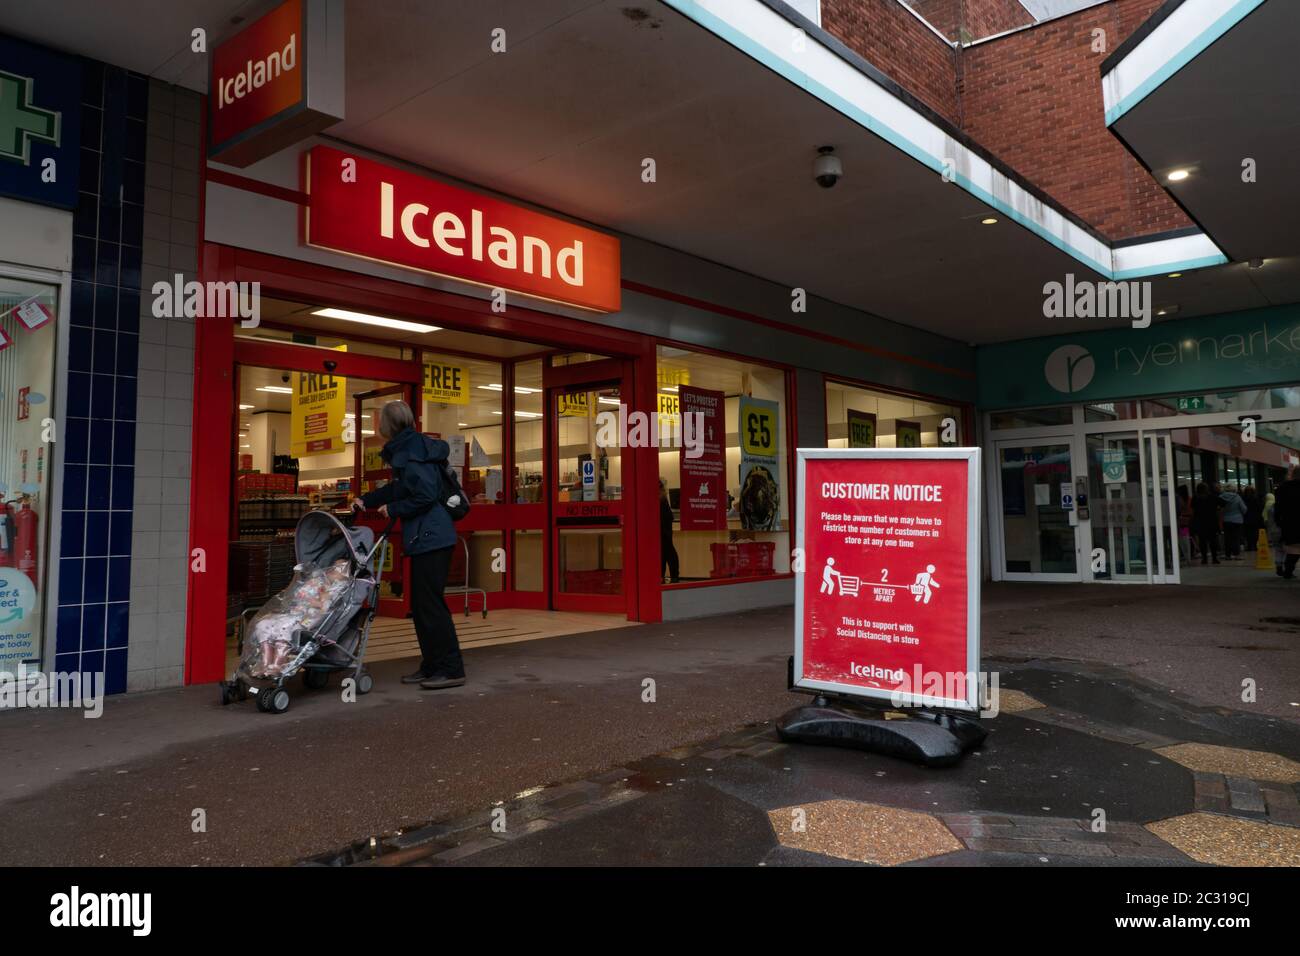 Panneau à l'extérieur de l'avant de l'atelier en Islande demandant aux clients de garder 2 m à l'écart. Stourbridge. West Midlands. ROYAUME-UNI Banque D'Images